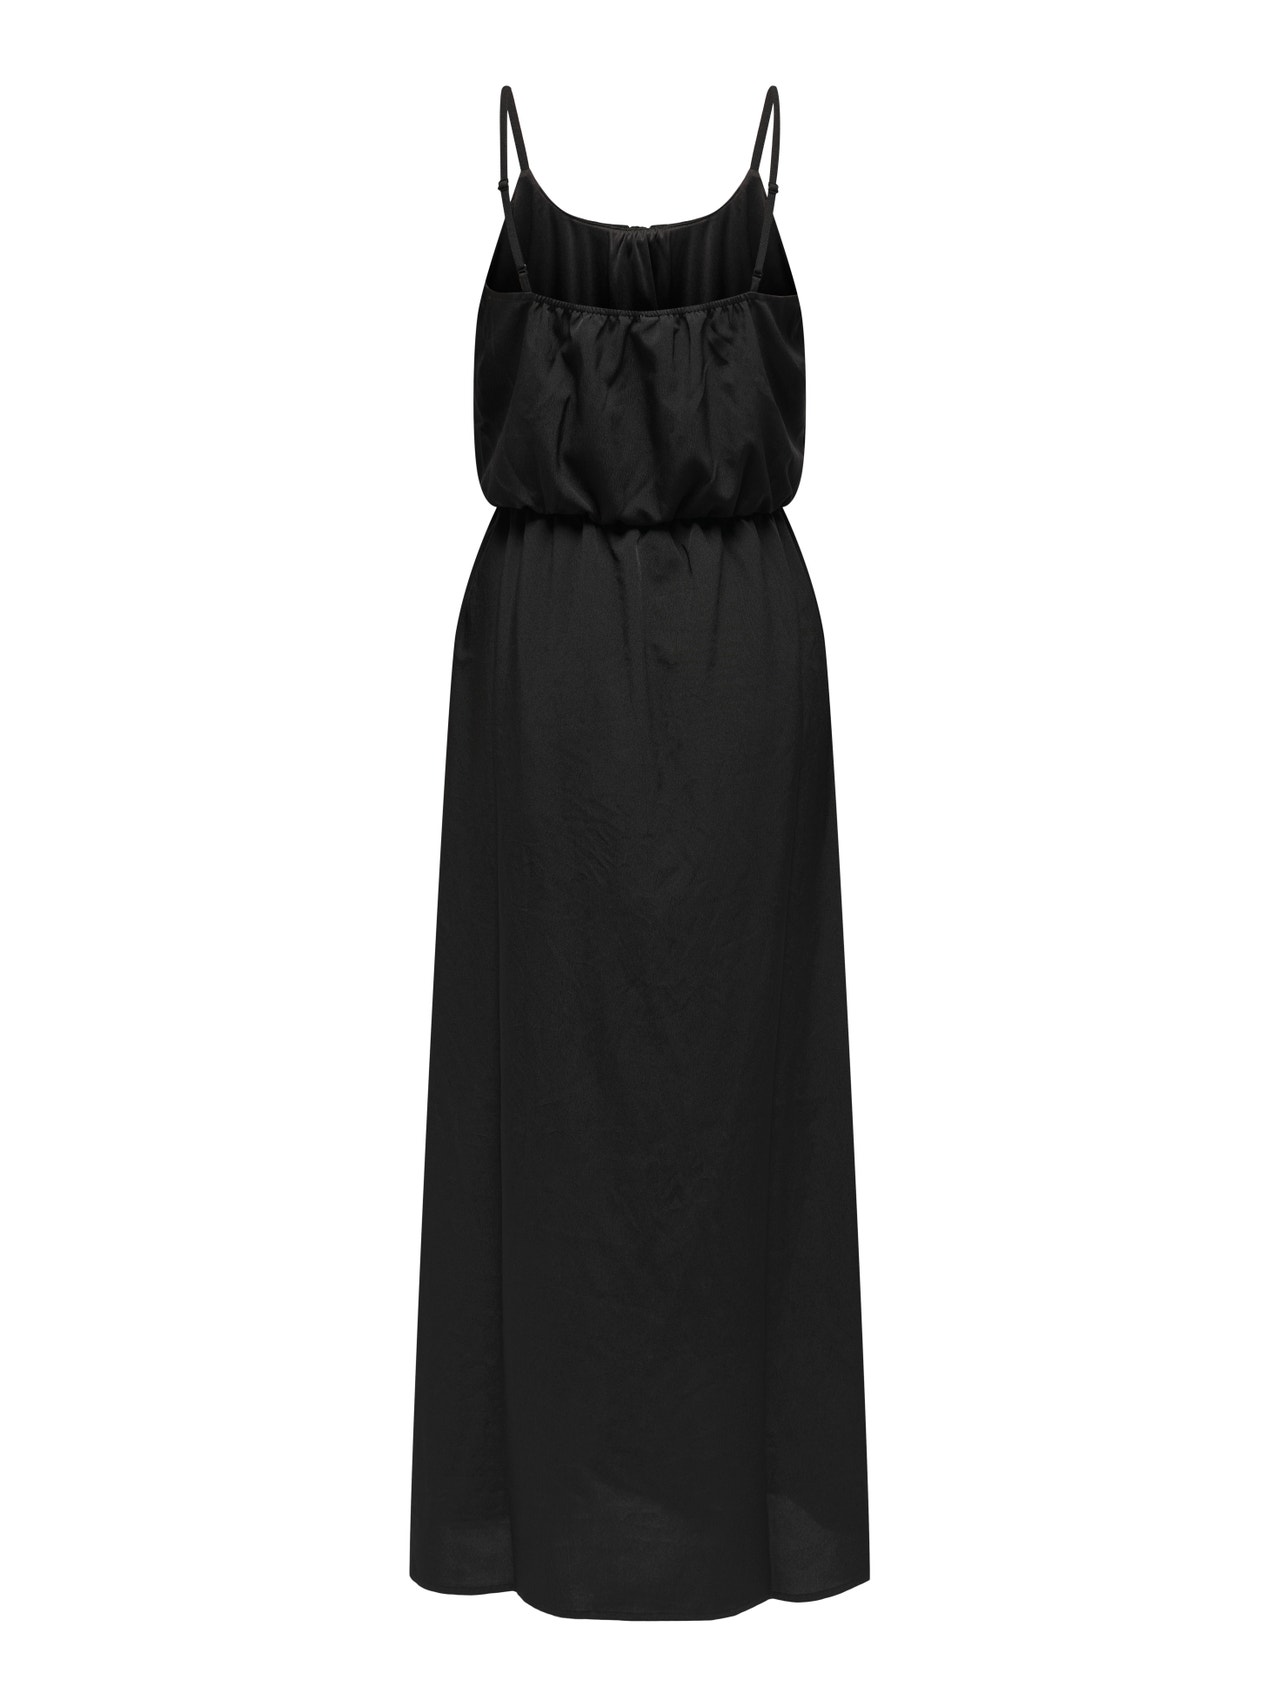 ONLY Normal geschnitten Rundhals Verstellbare Träger Langes Kleid -Black - 15335556